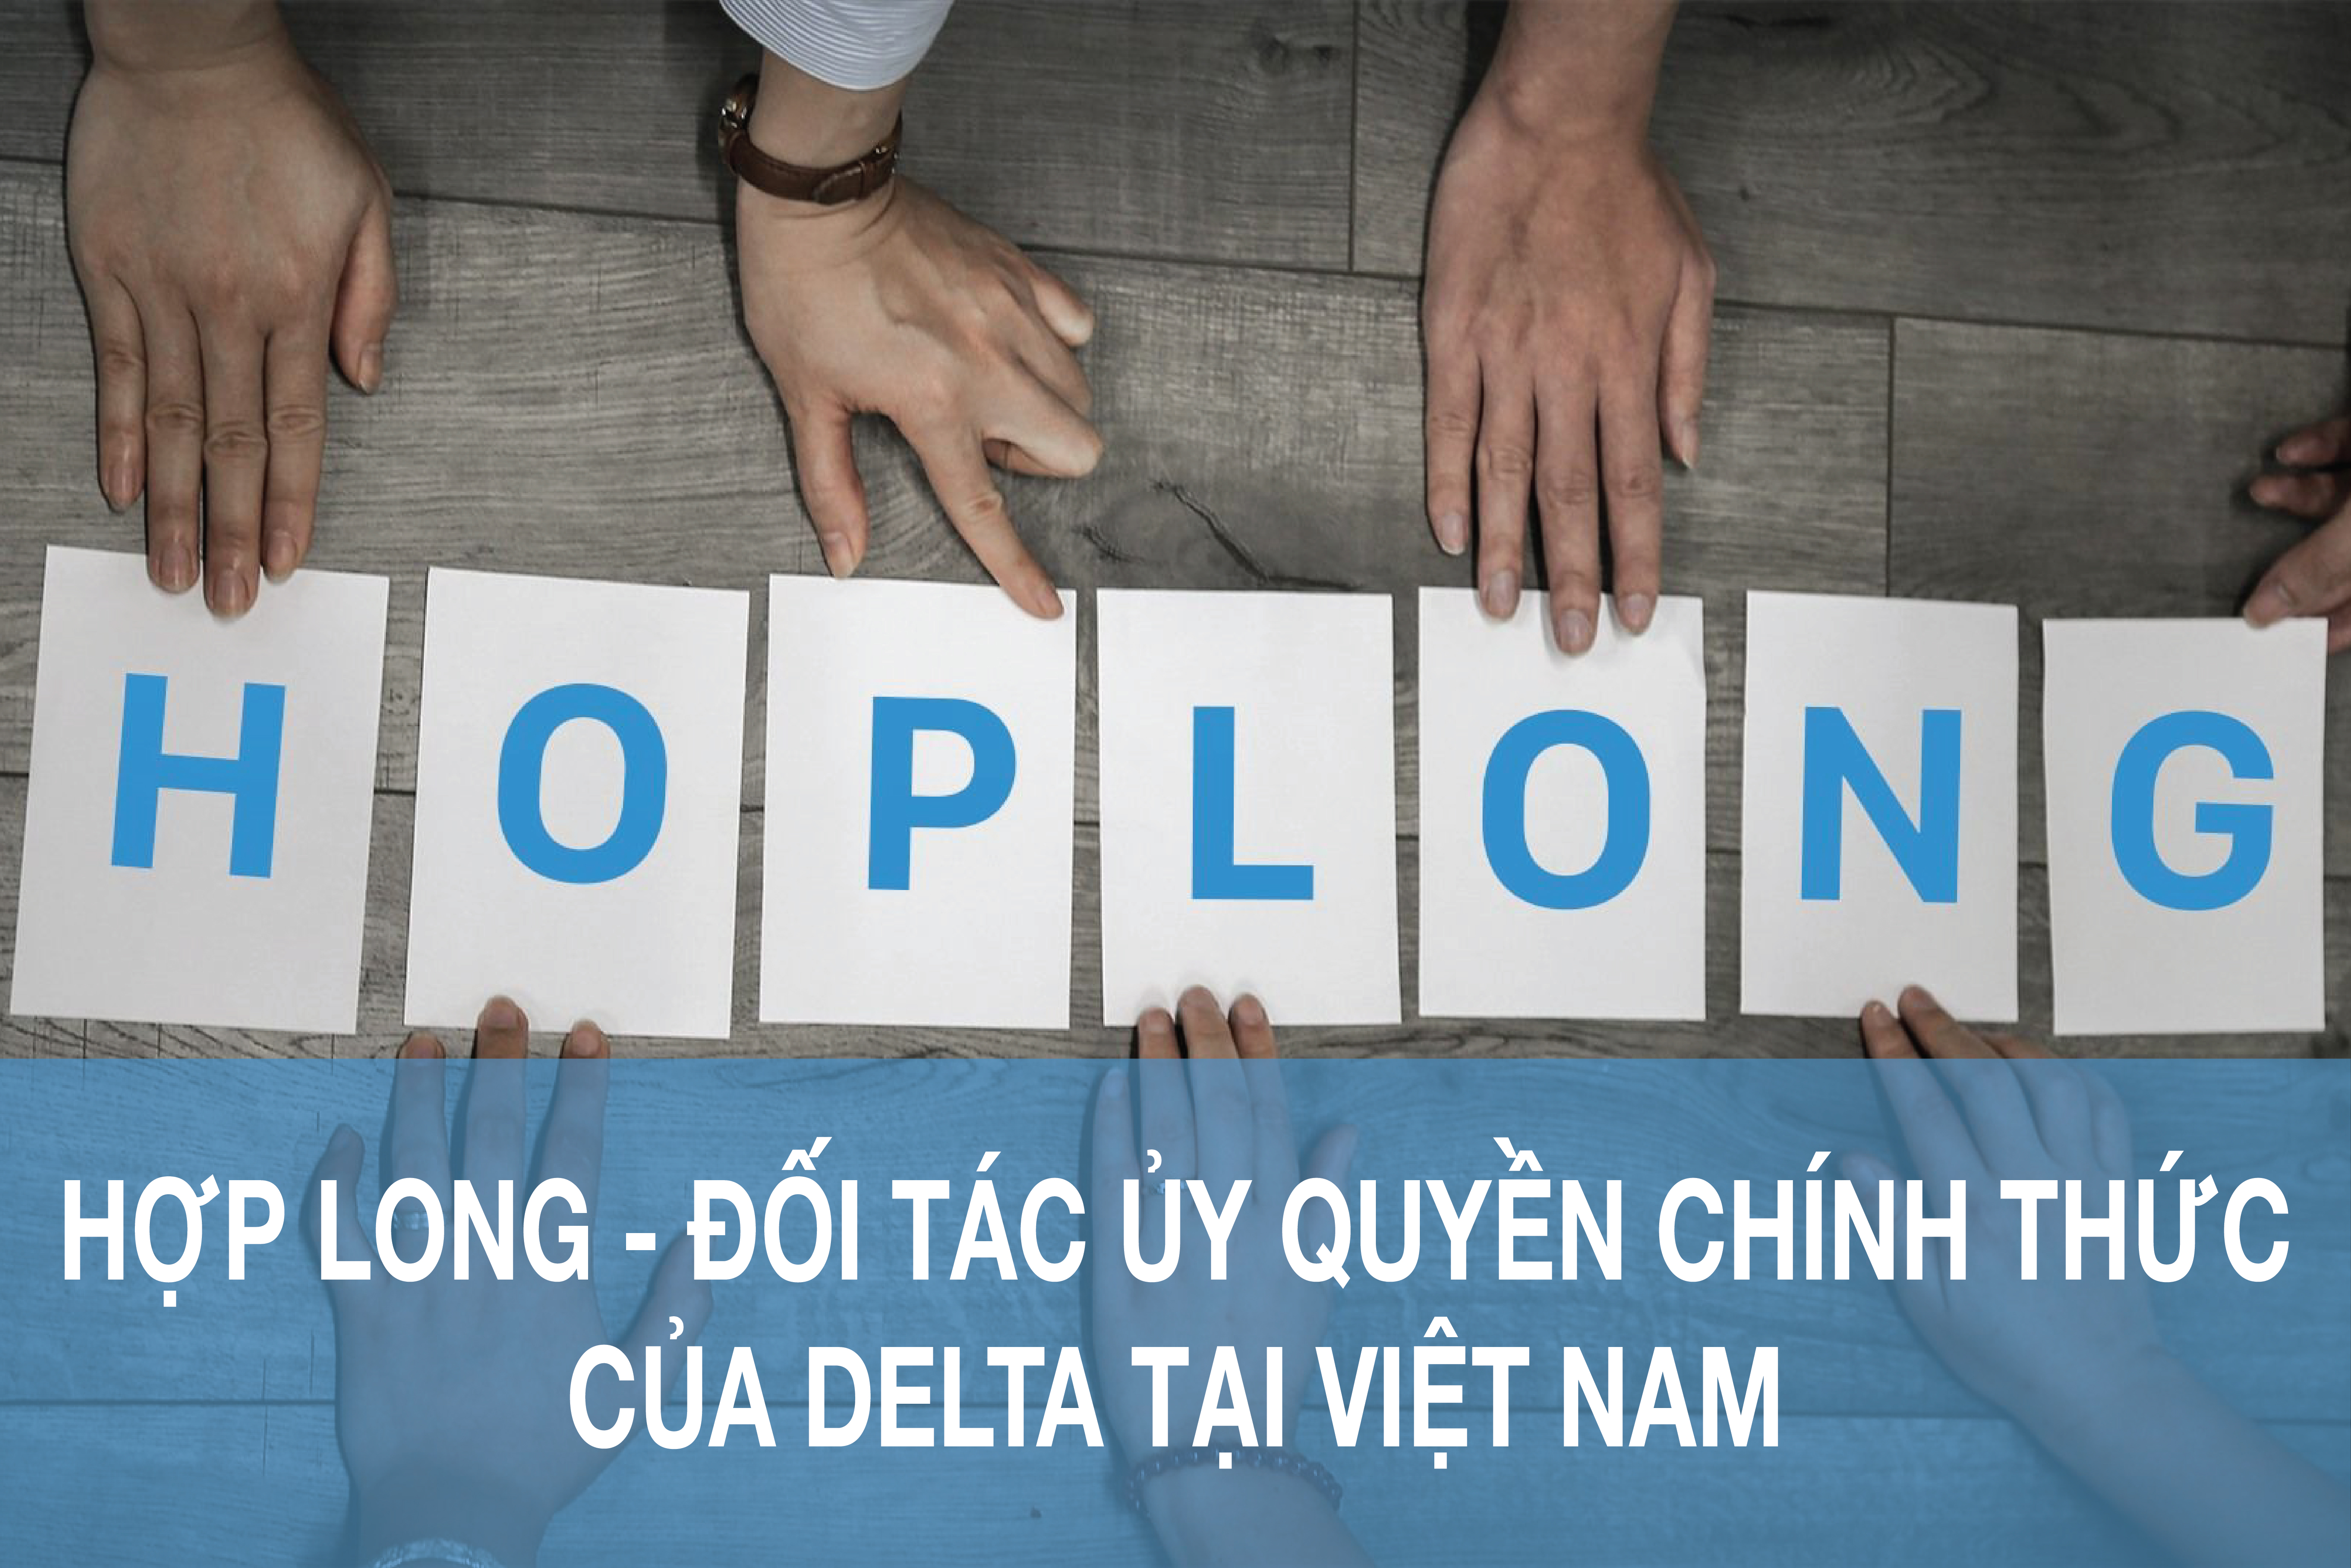 Hợp Long - Đối tác ủy quyền chính thức của Delta tại Việt Nam